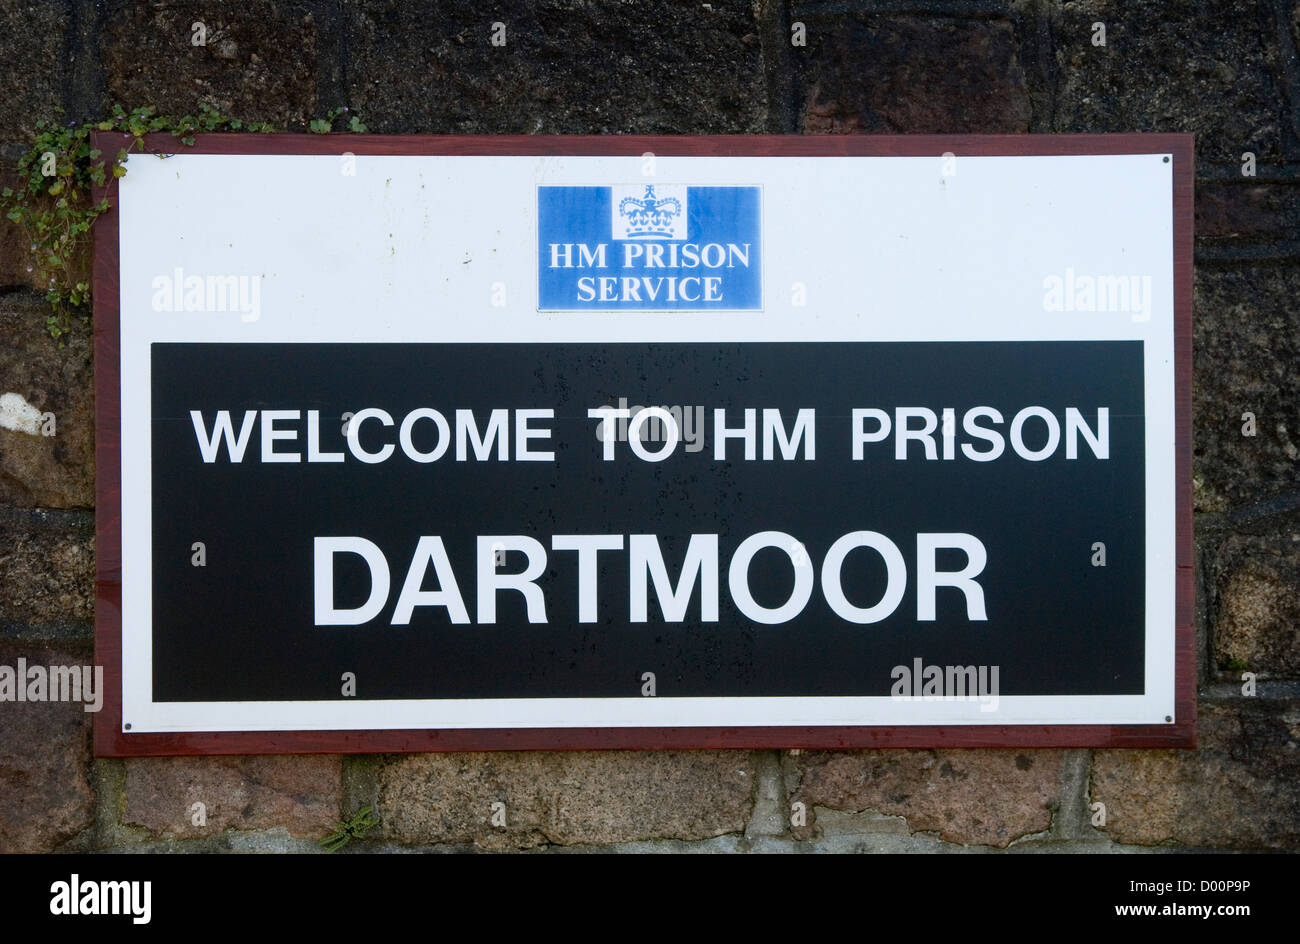 Willkommen Sie bei HM Prison Dartmoor Schild an Wand des Gefängnisses. Dartmoor Gefängnis Princetown Devon Uk. HOMER SYKES Stockfoto